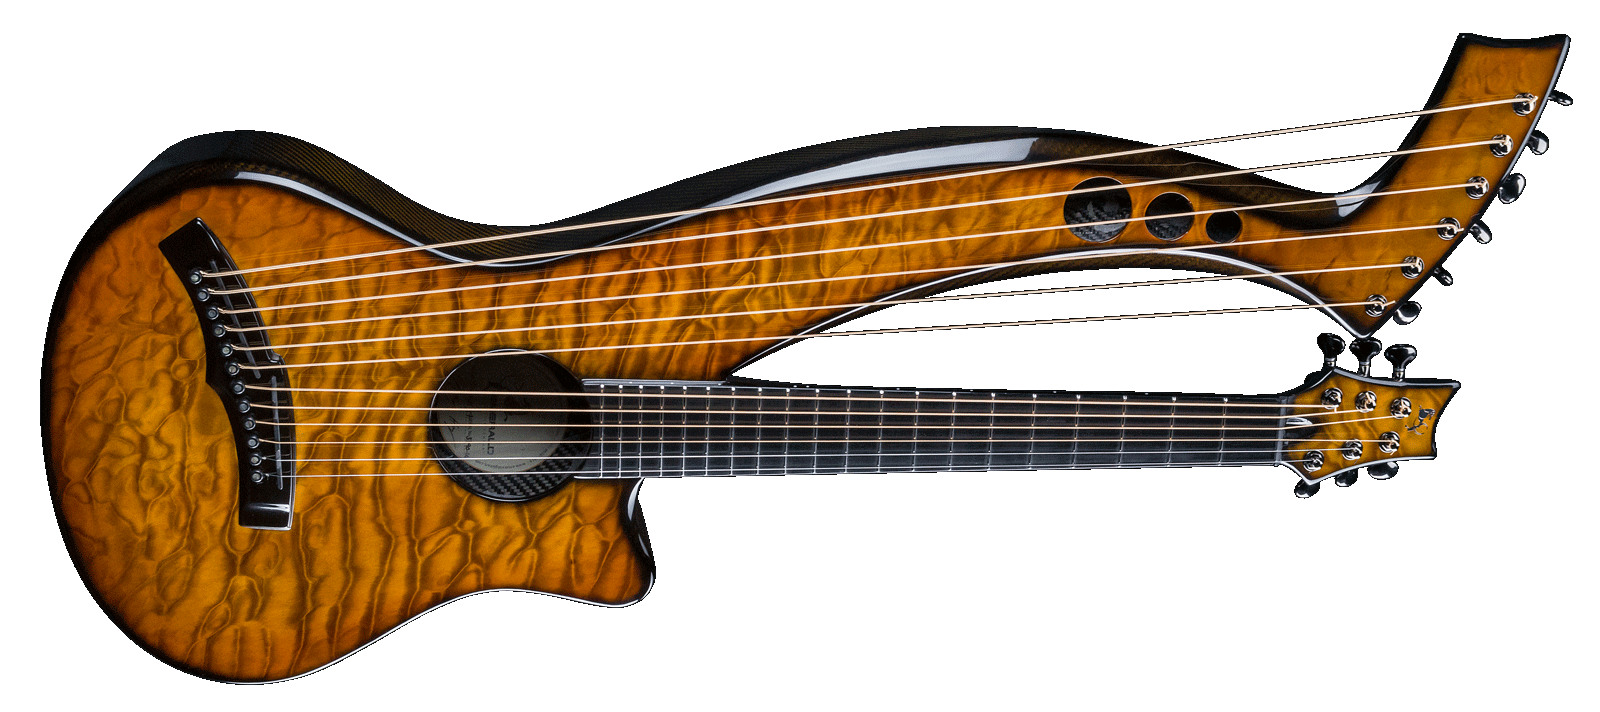 Harp Guitar Transparent Image